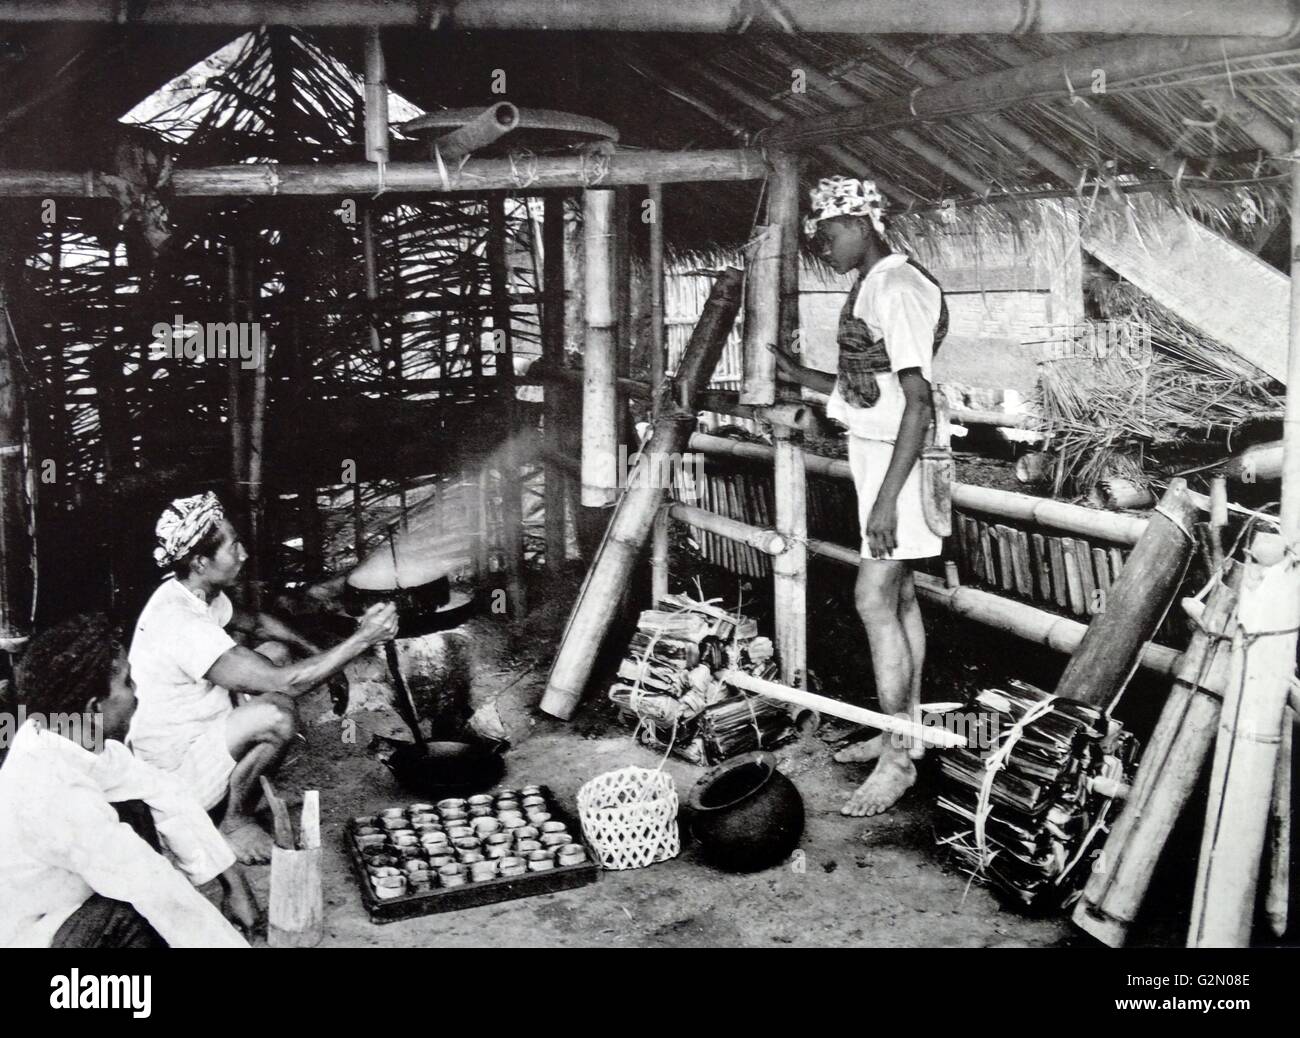 La photographie montre les figures masculines dans une cuisine maison indonésienne des pointes de sucre. Dutch East Indies, connu sous le nom de l'Indonésie moderne. Du c1935. Banque D'Images